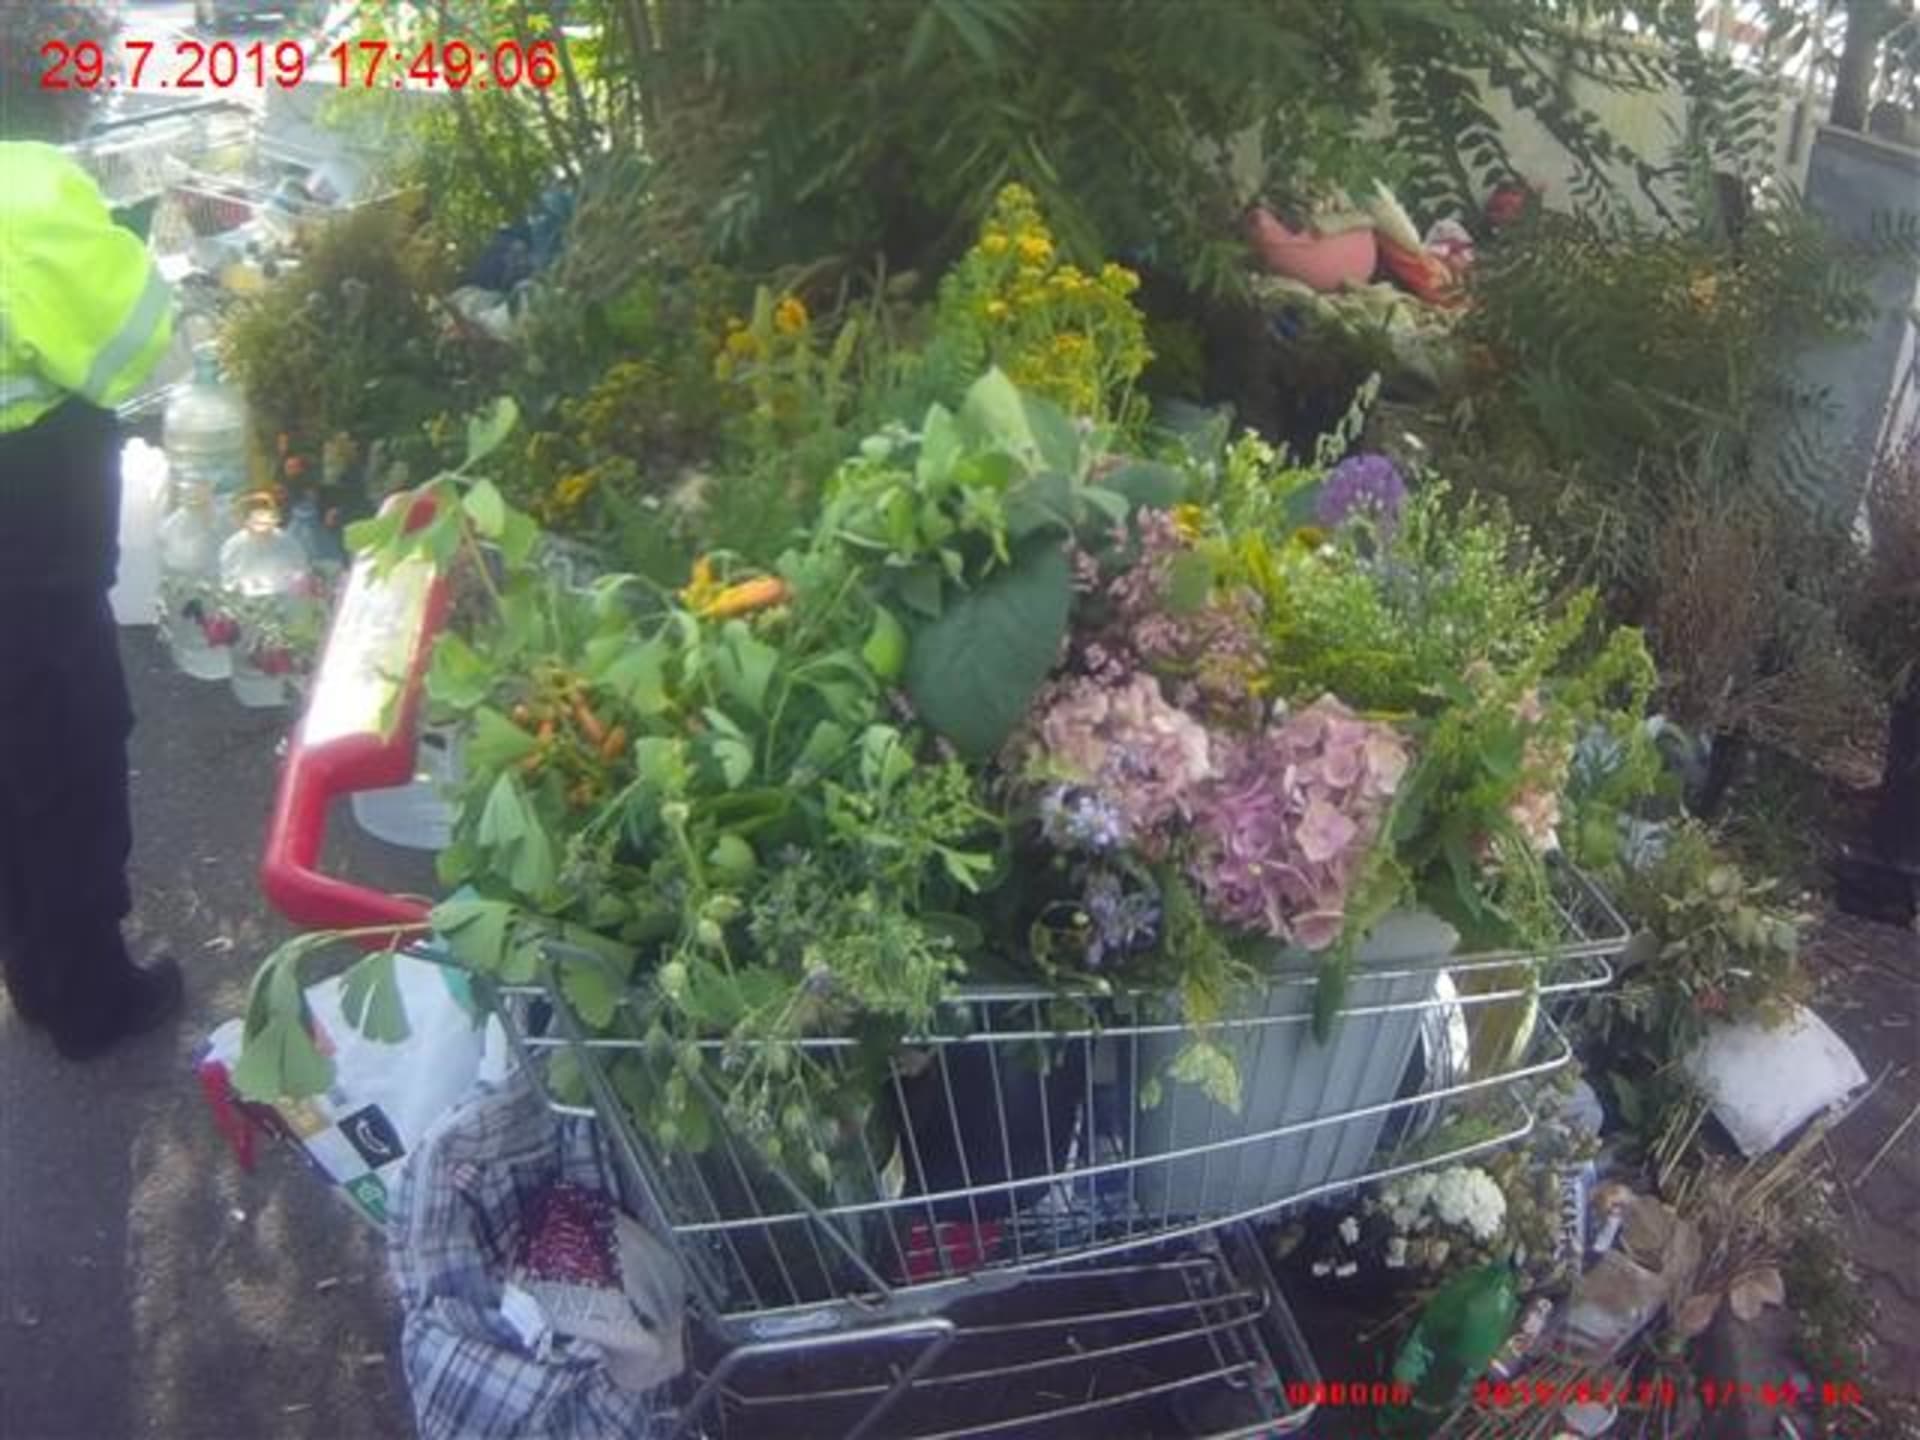 Žena vezla ukradené květiny v nákupním košíku